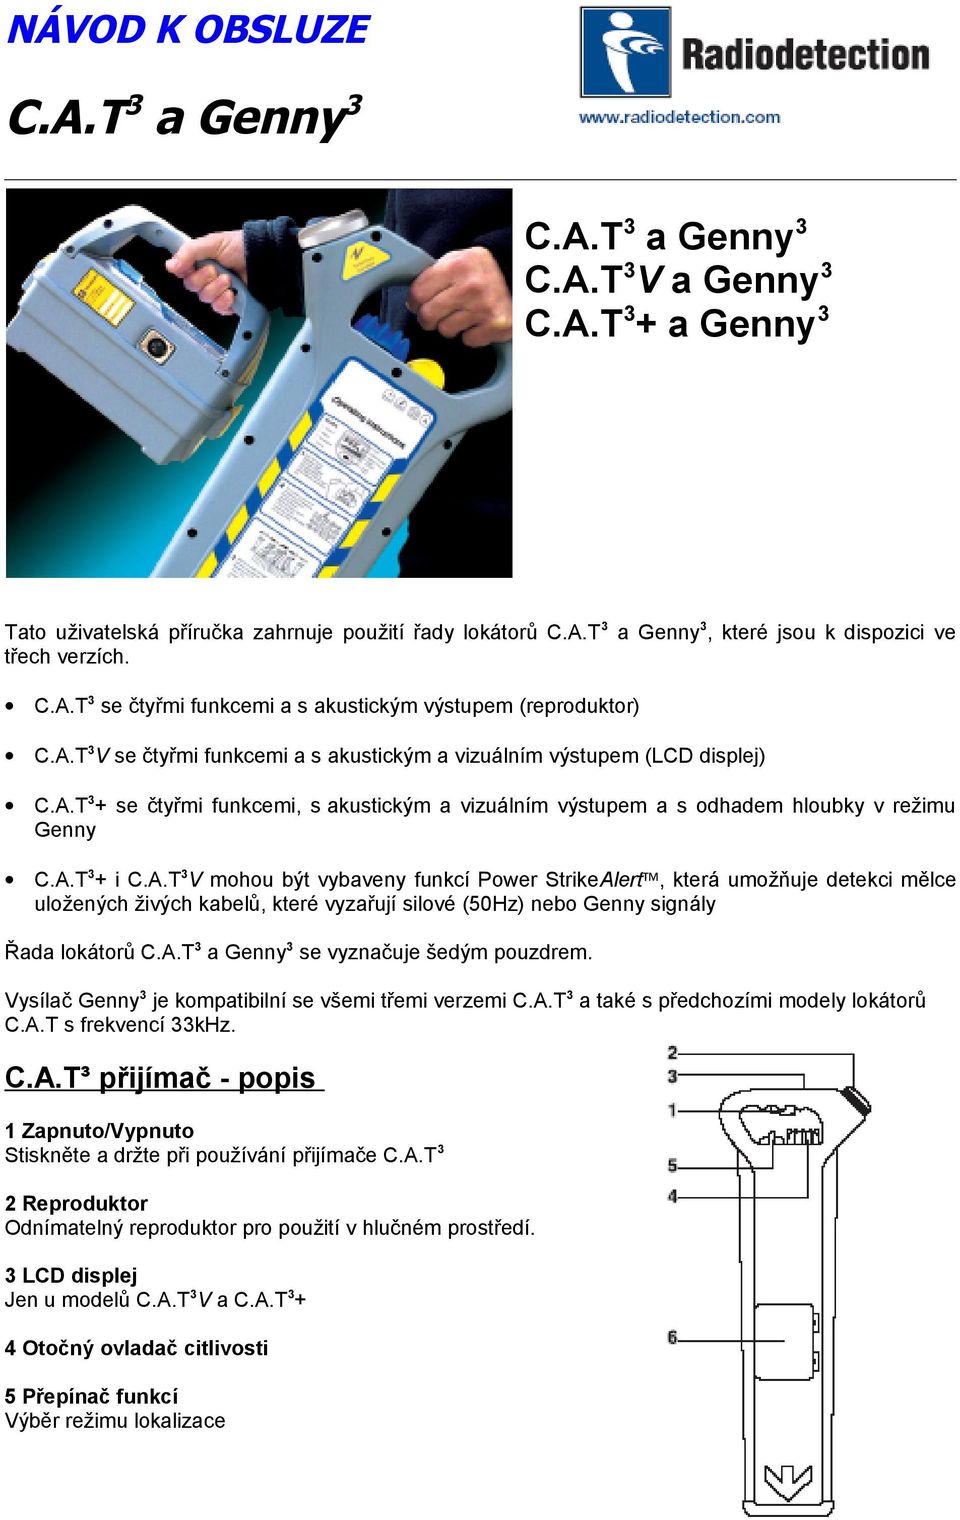 A.T3 a Genny3 se vyznačuje šedým pouzdrem. Vysílač Genny3 je kompatibilní se všemi třemi verzemi C.A.T3 a také s předchozími modely lokátorů C.A.T s frekvencí 33kHz. C.A.T³ přijímač - popis 1 Zapnuto/Vypnuto Stiskněte a držte při používání přijímače C.